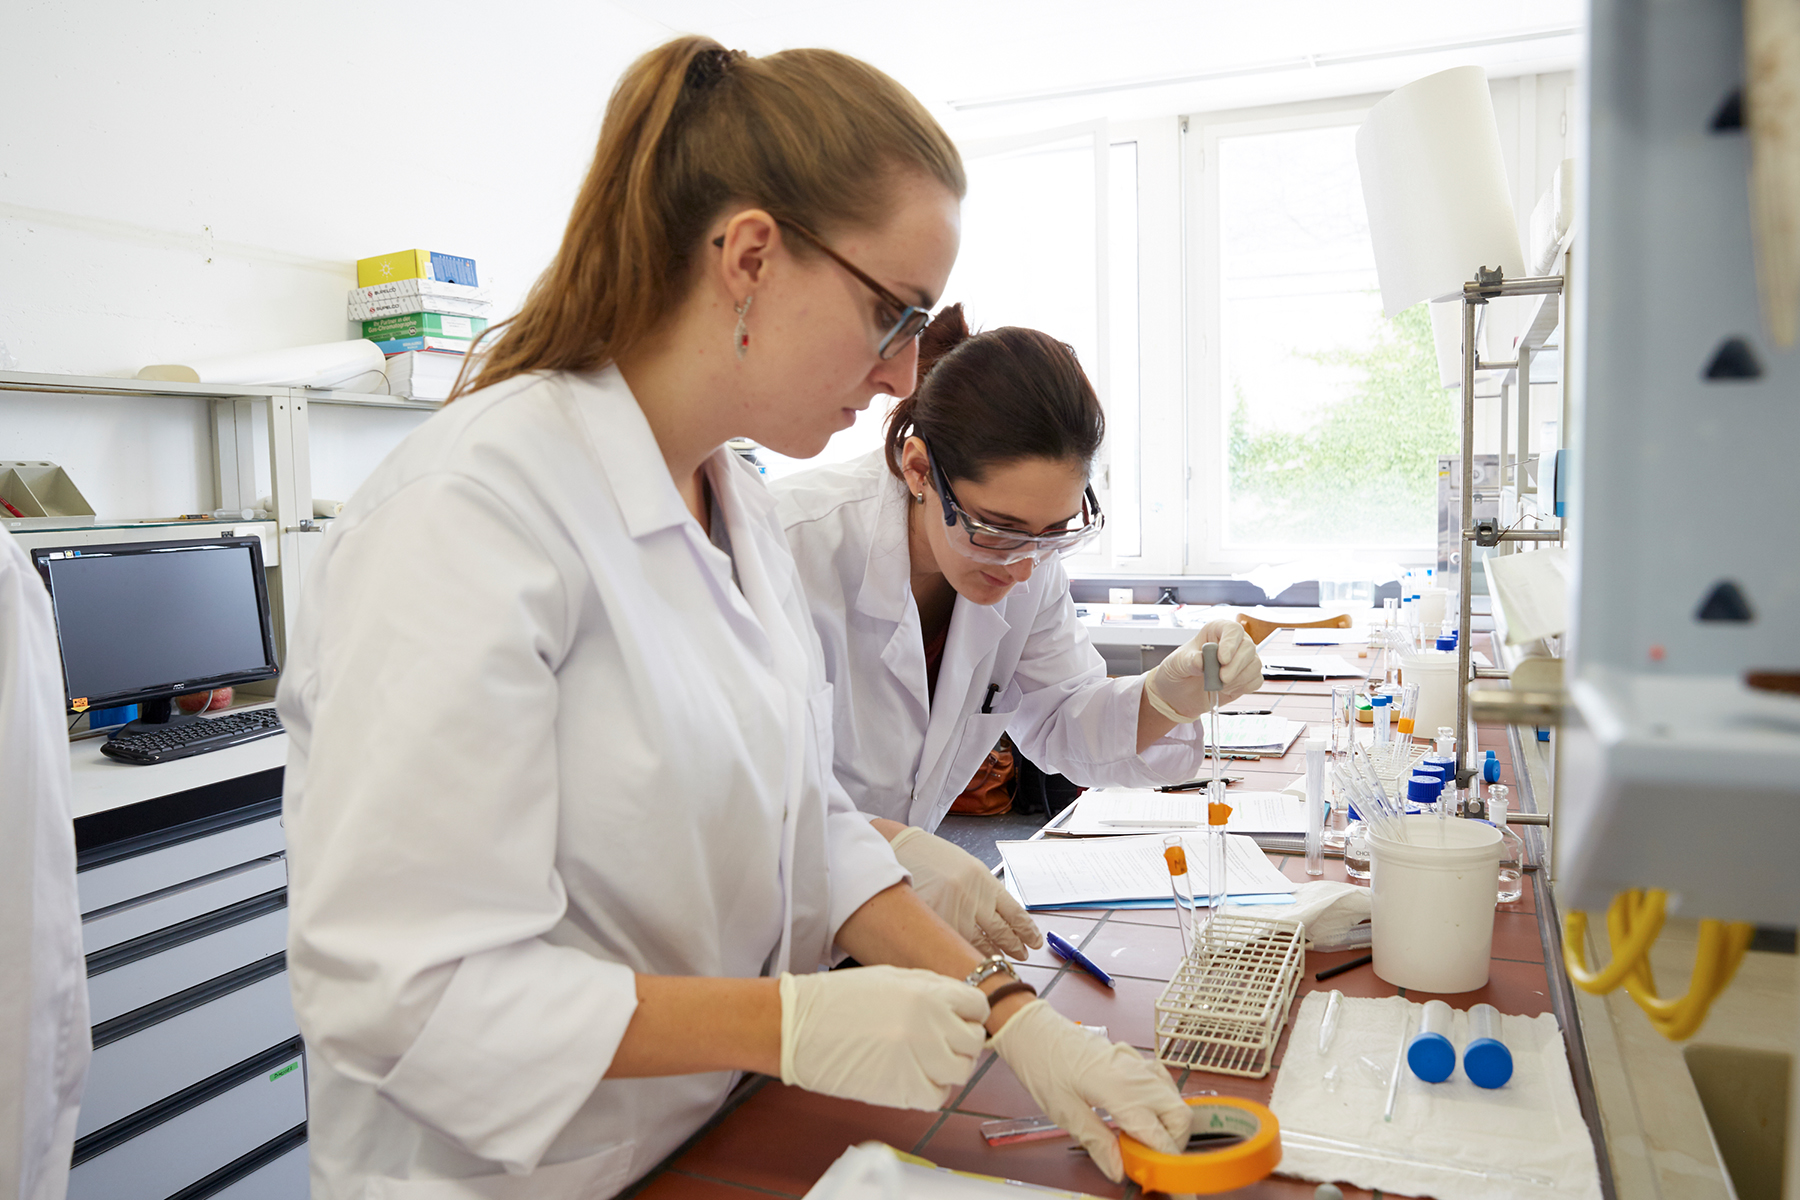 Als einzige Hochschule in der Schweiz bietet die Universität Bern eine bifakultäre Kombination von naturwissenschaftlicher und patientenorientierter Ausbildung an. Die Stiftungsprofessur Klinische Pharmazie wird auch zur Attraktivität des Studiums beitragen.